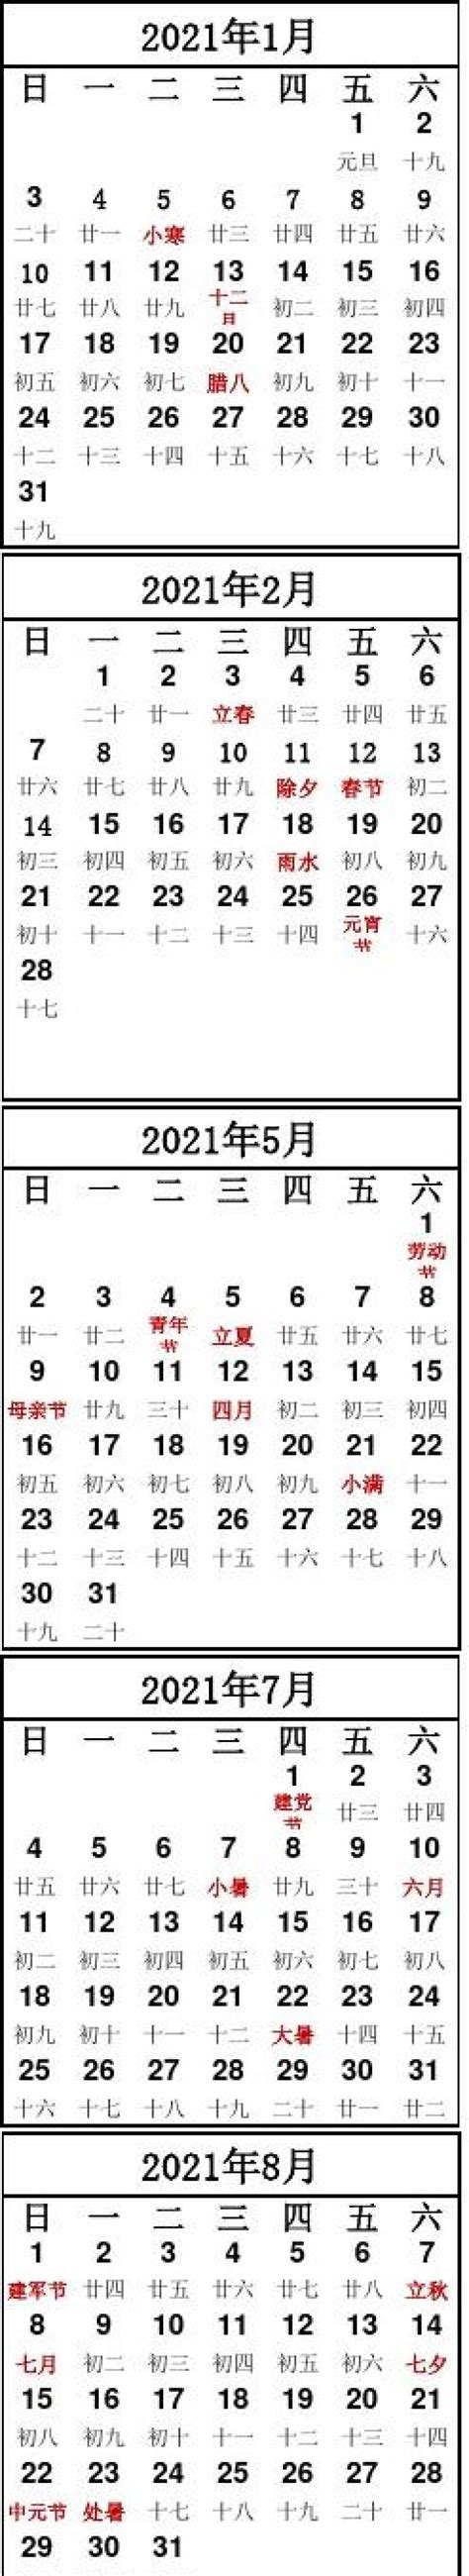 2021年日历表(超清晰A4打印版).xls_文档猫